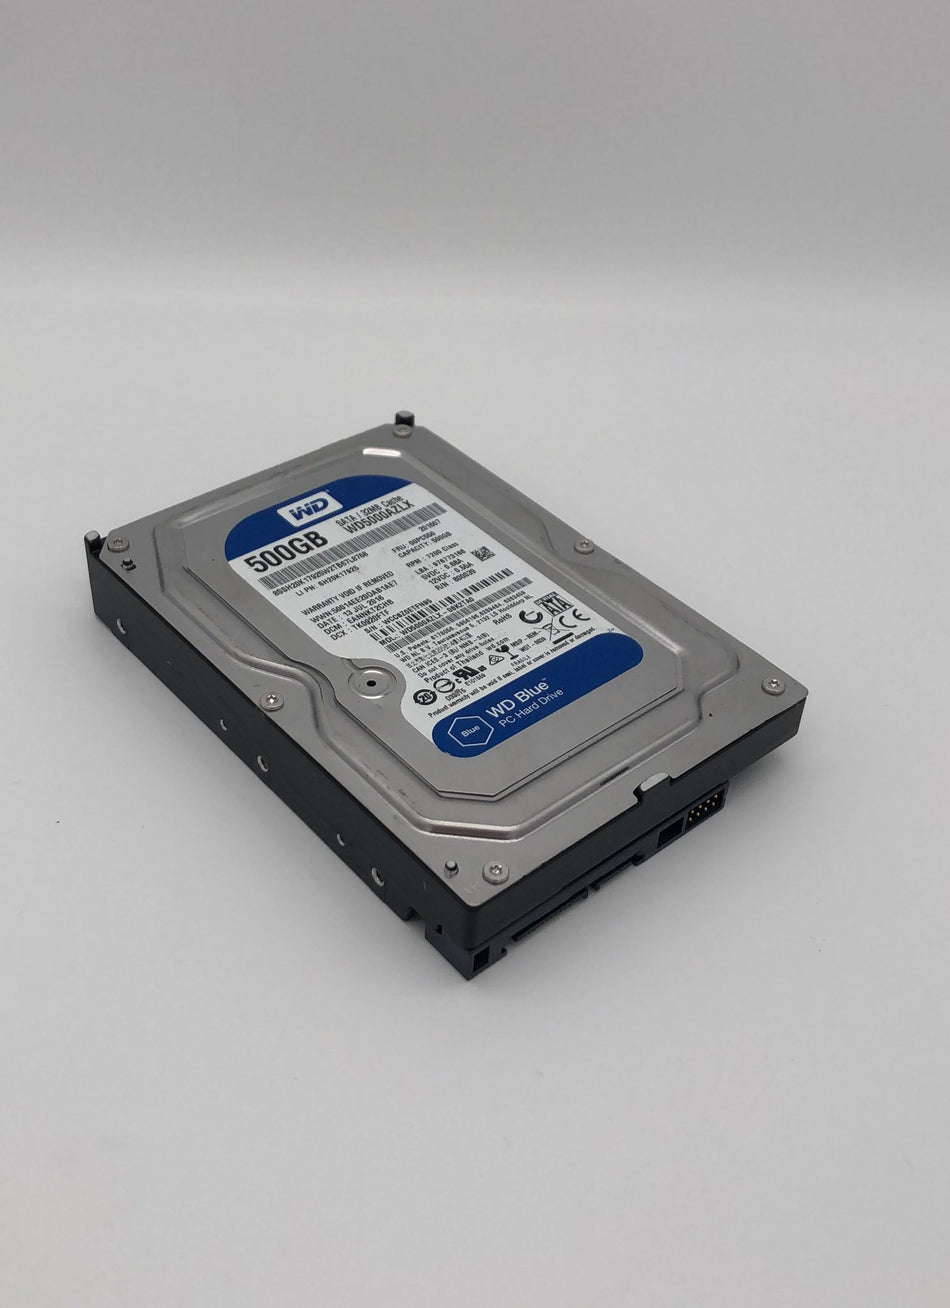 500 GB SATA HDD Festplatte - Western Digital WD5000AZLX - 3,5'' SATA HDD - 500 GB